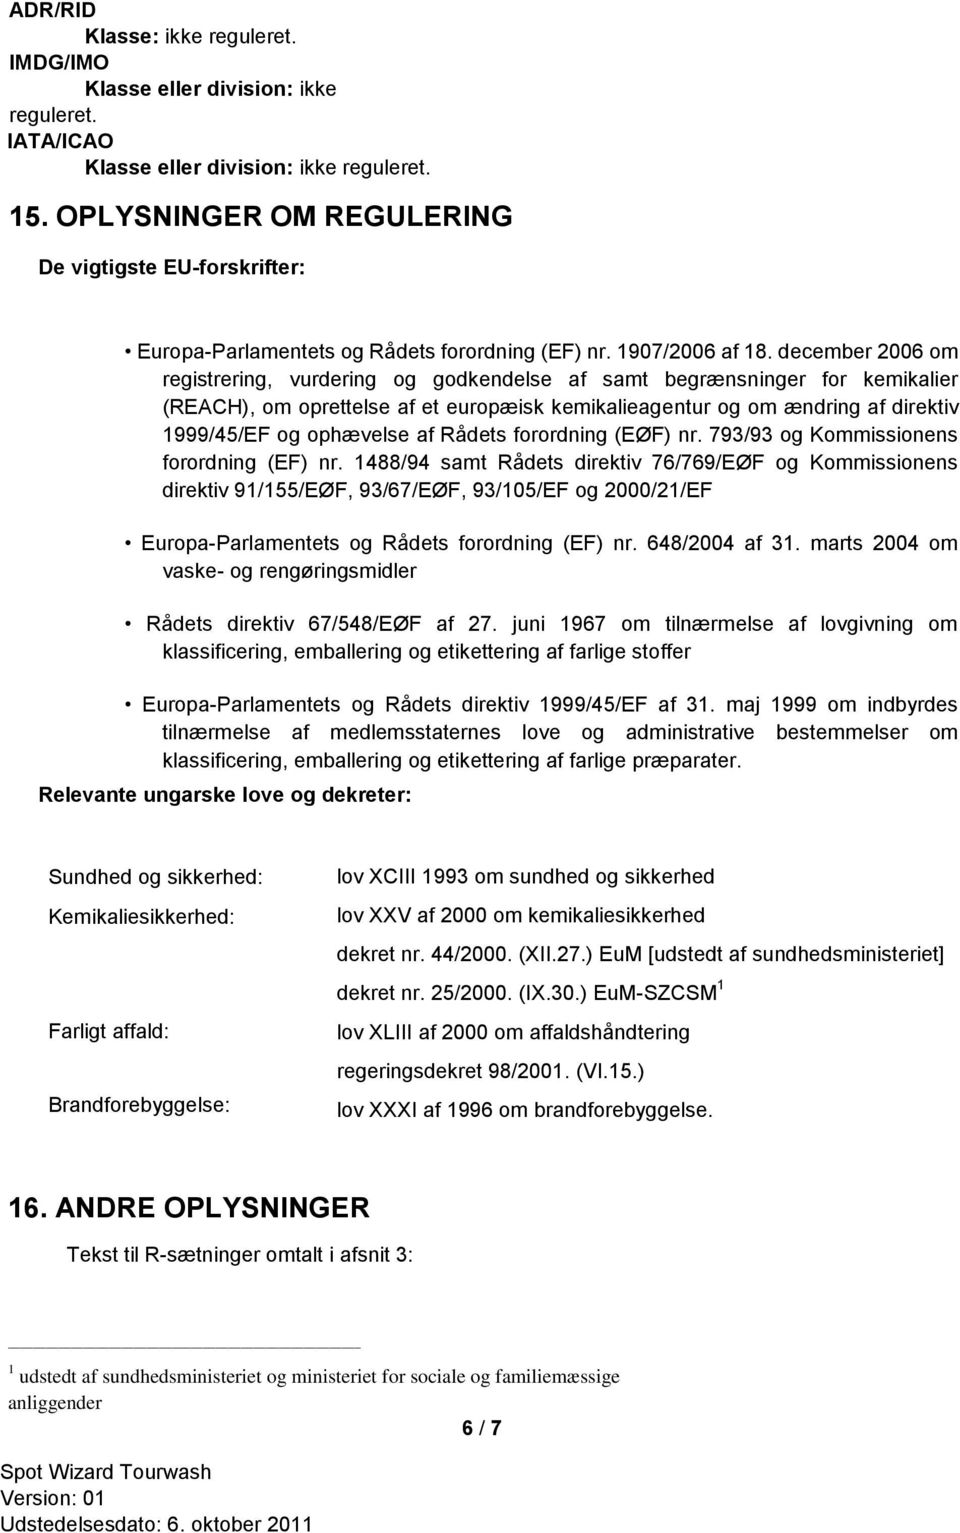 december 2006 om registrering, vurdering og godkendelse af samt begrænsninger for kemikalier (REACH), om oprettelse af et europæisk kemikalieagentur og om ændring af direktiv 1999/45/EF og ophævelse